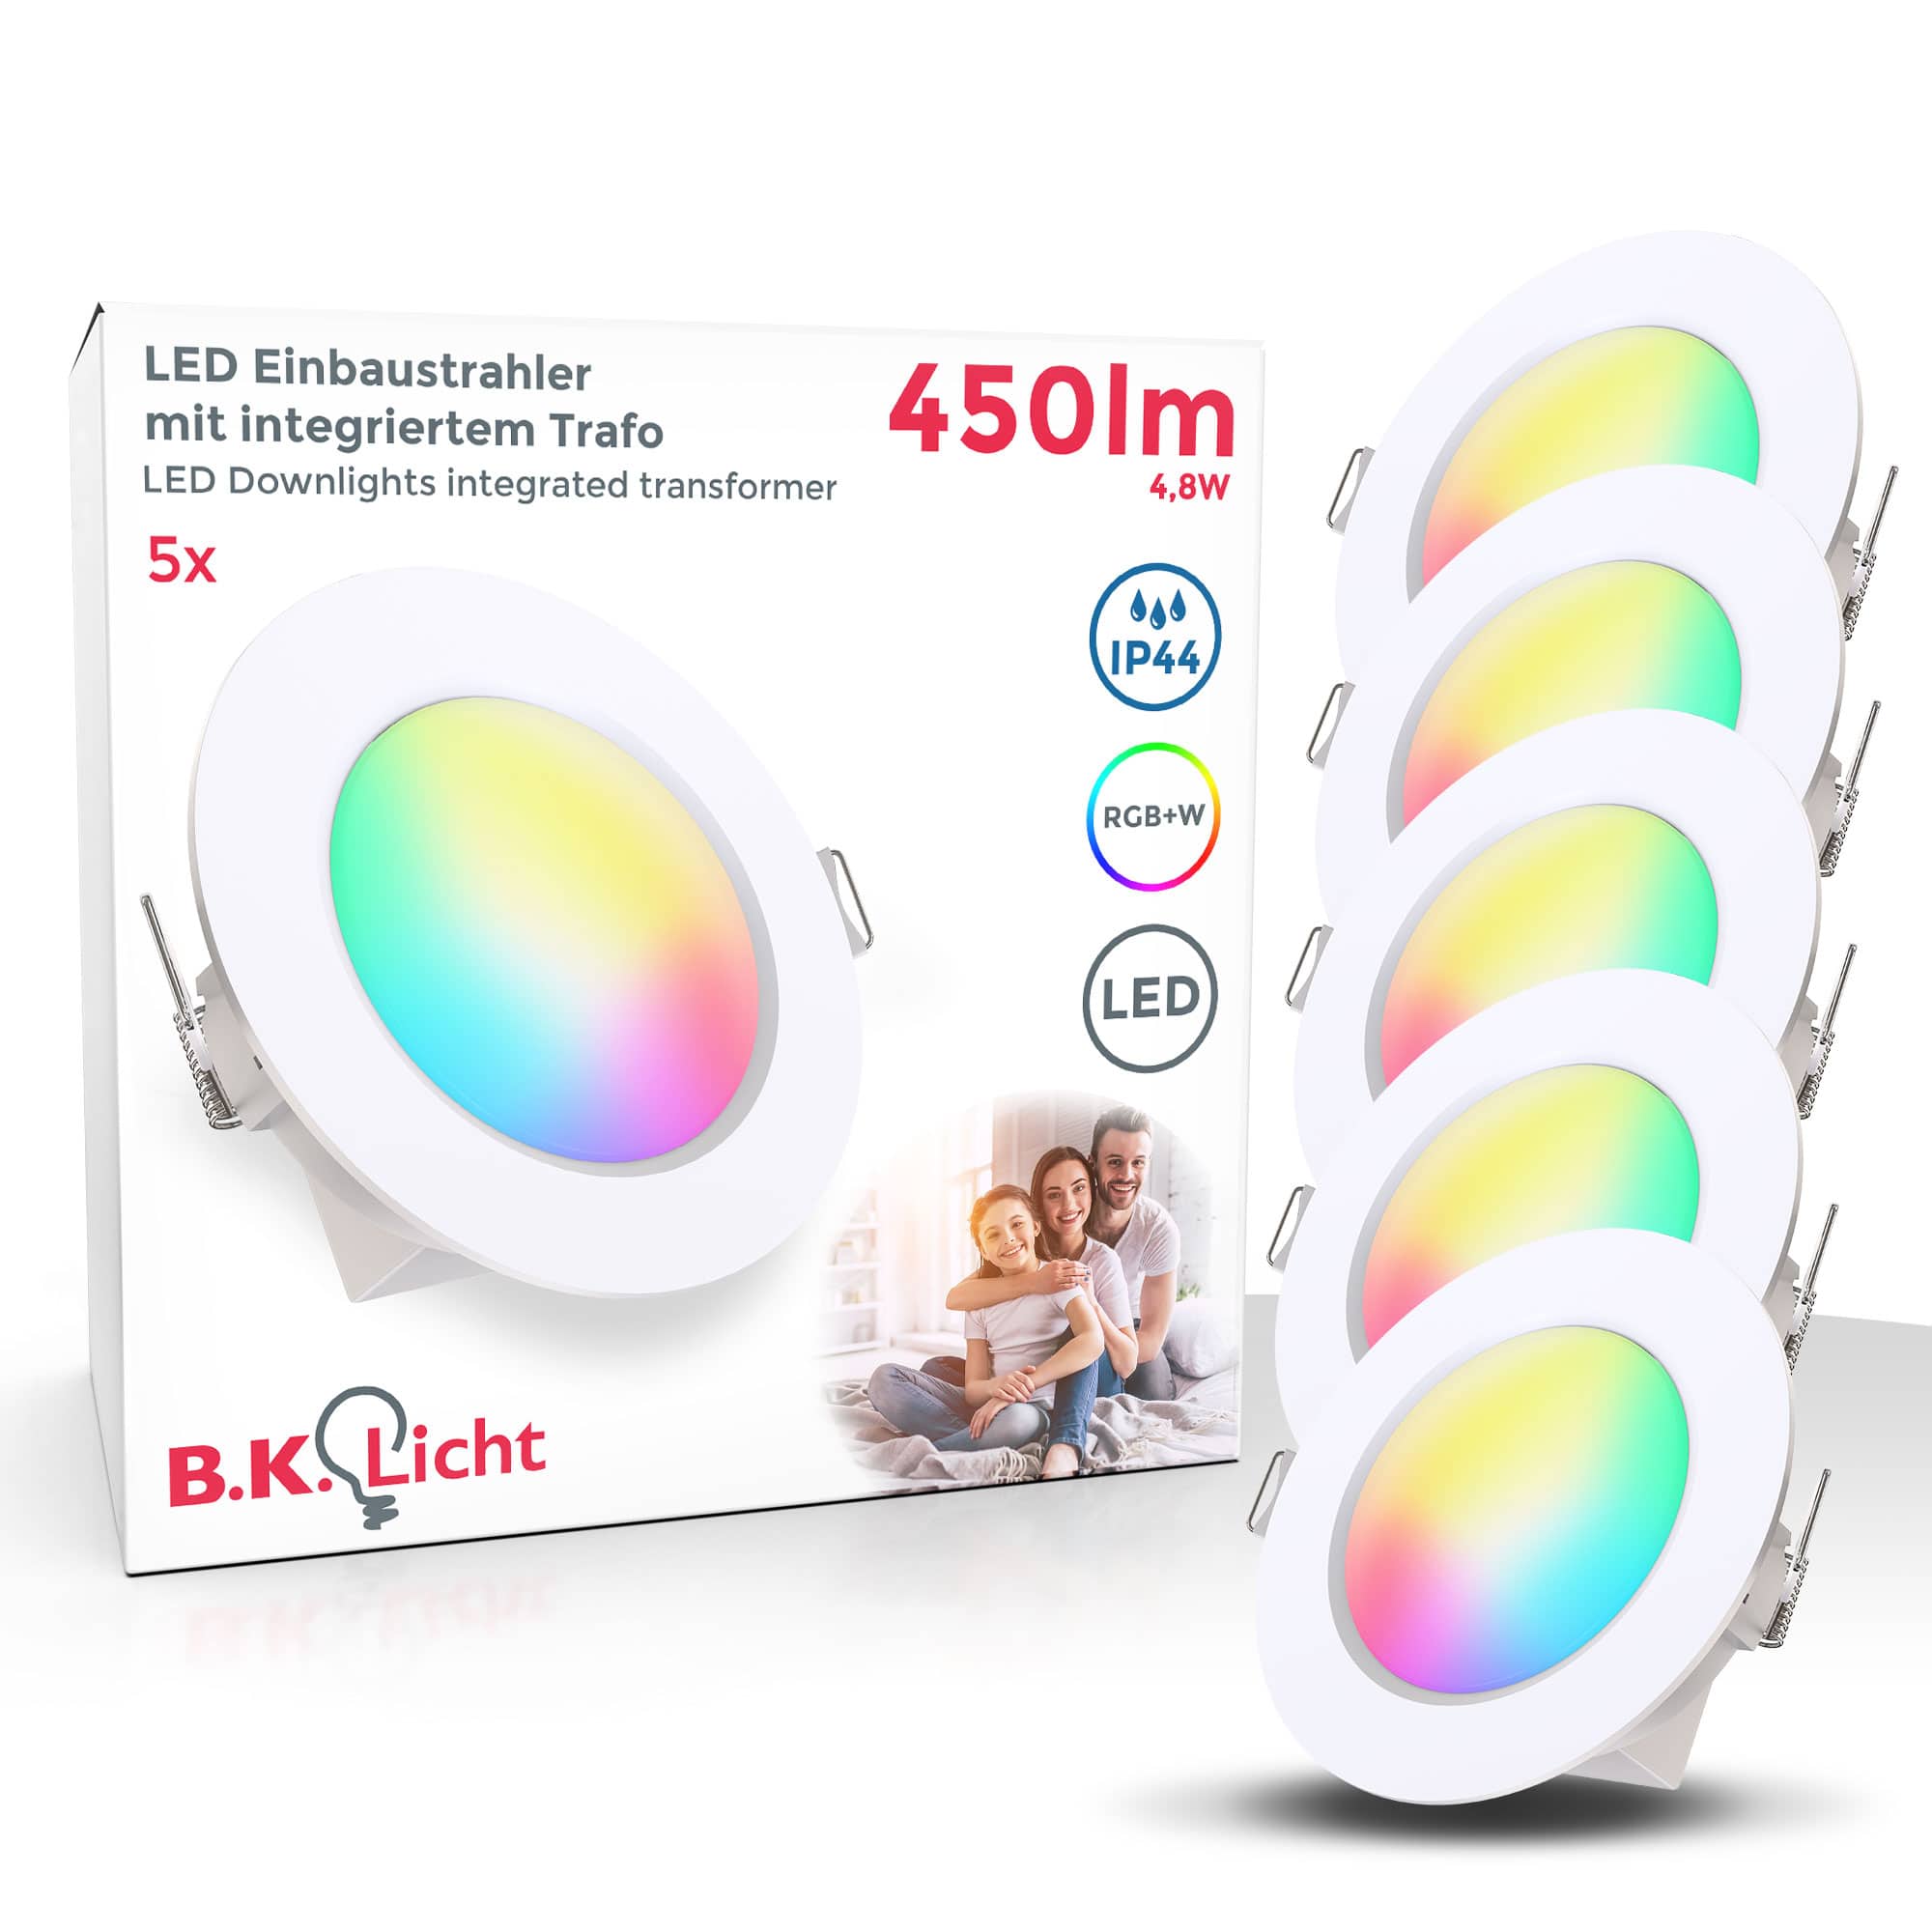 & B.K.Licht | LED Lampen Onlineshop günstig kaufen Leuchten